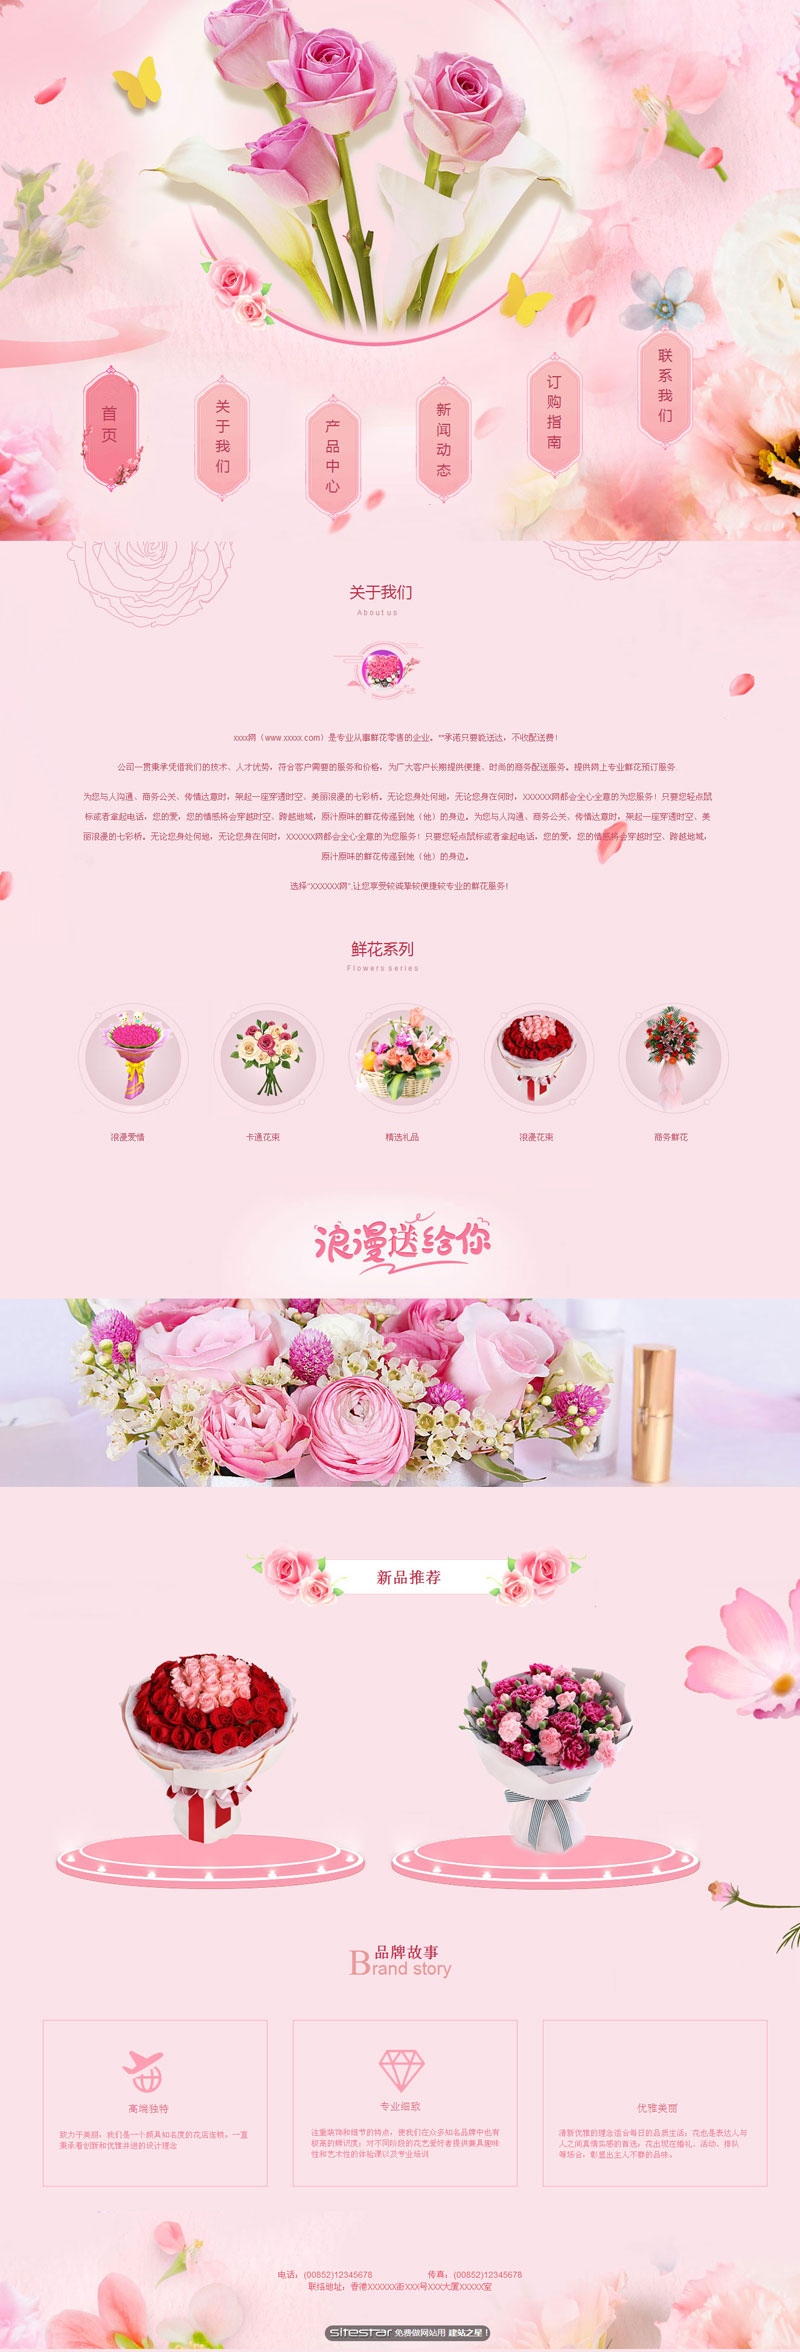 企业网站精美模板-flowers-1135516